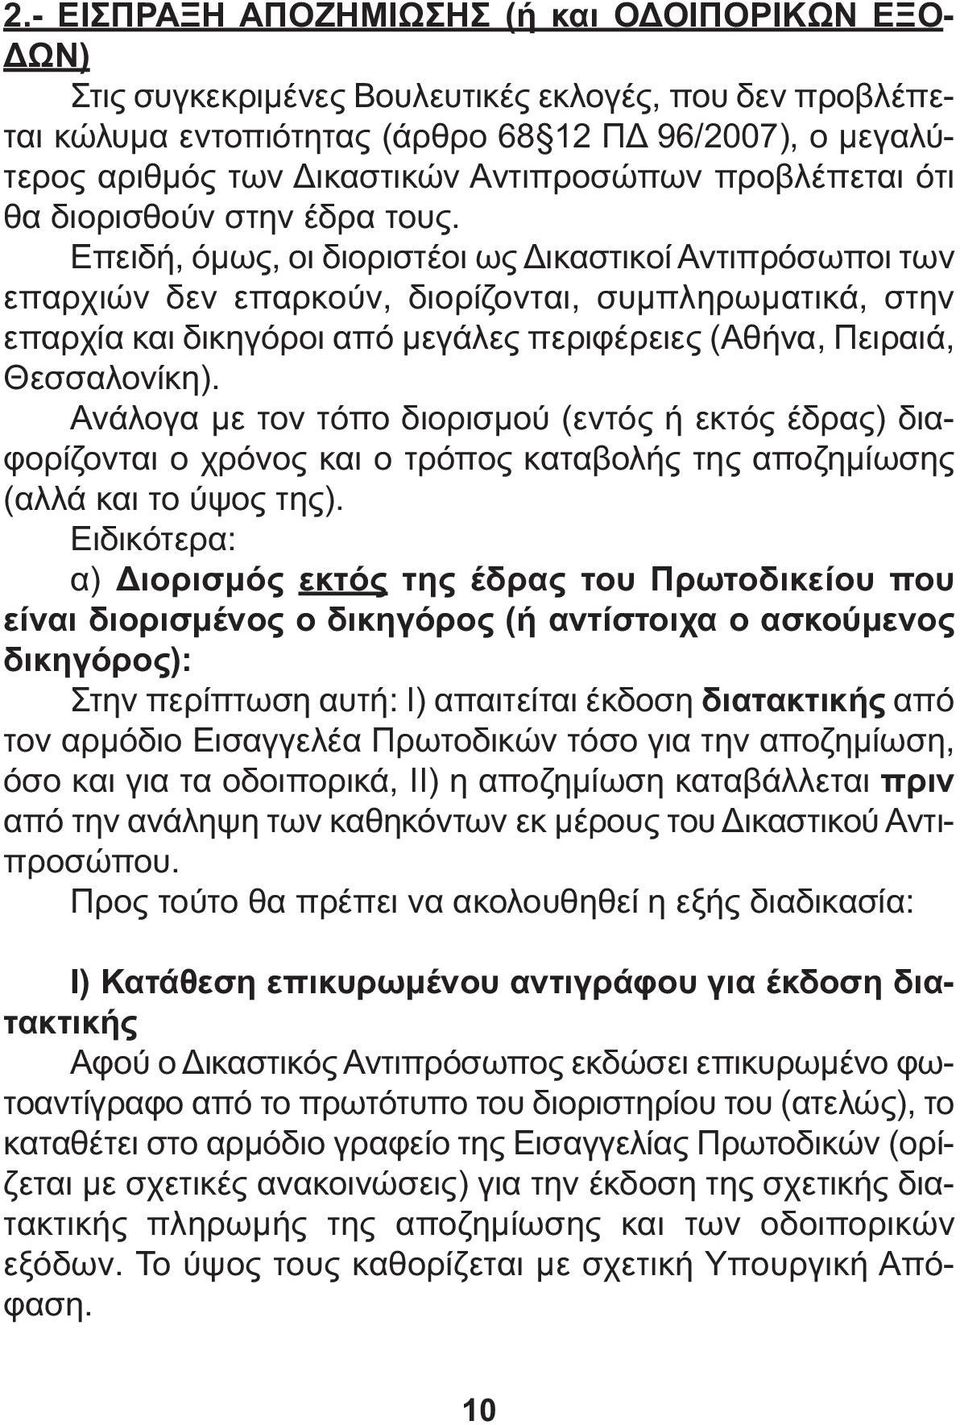 Επειδή, όµως, οι διοριστέοι ως ικαστικοί Αντιπρόσωποι των επαρχιών δεν επαρκούν, διορίζονται, συµπληρωµατικά, στην επαρχία και δικηγόροι από µεγάλες περιφέρειες (Αθήνα, Πειραιά, Θεσσαλονίκη).